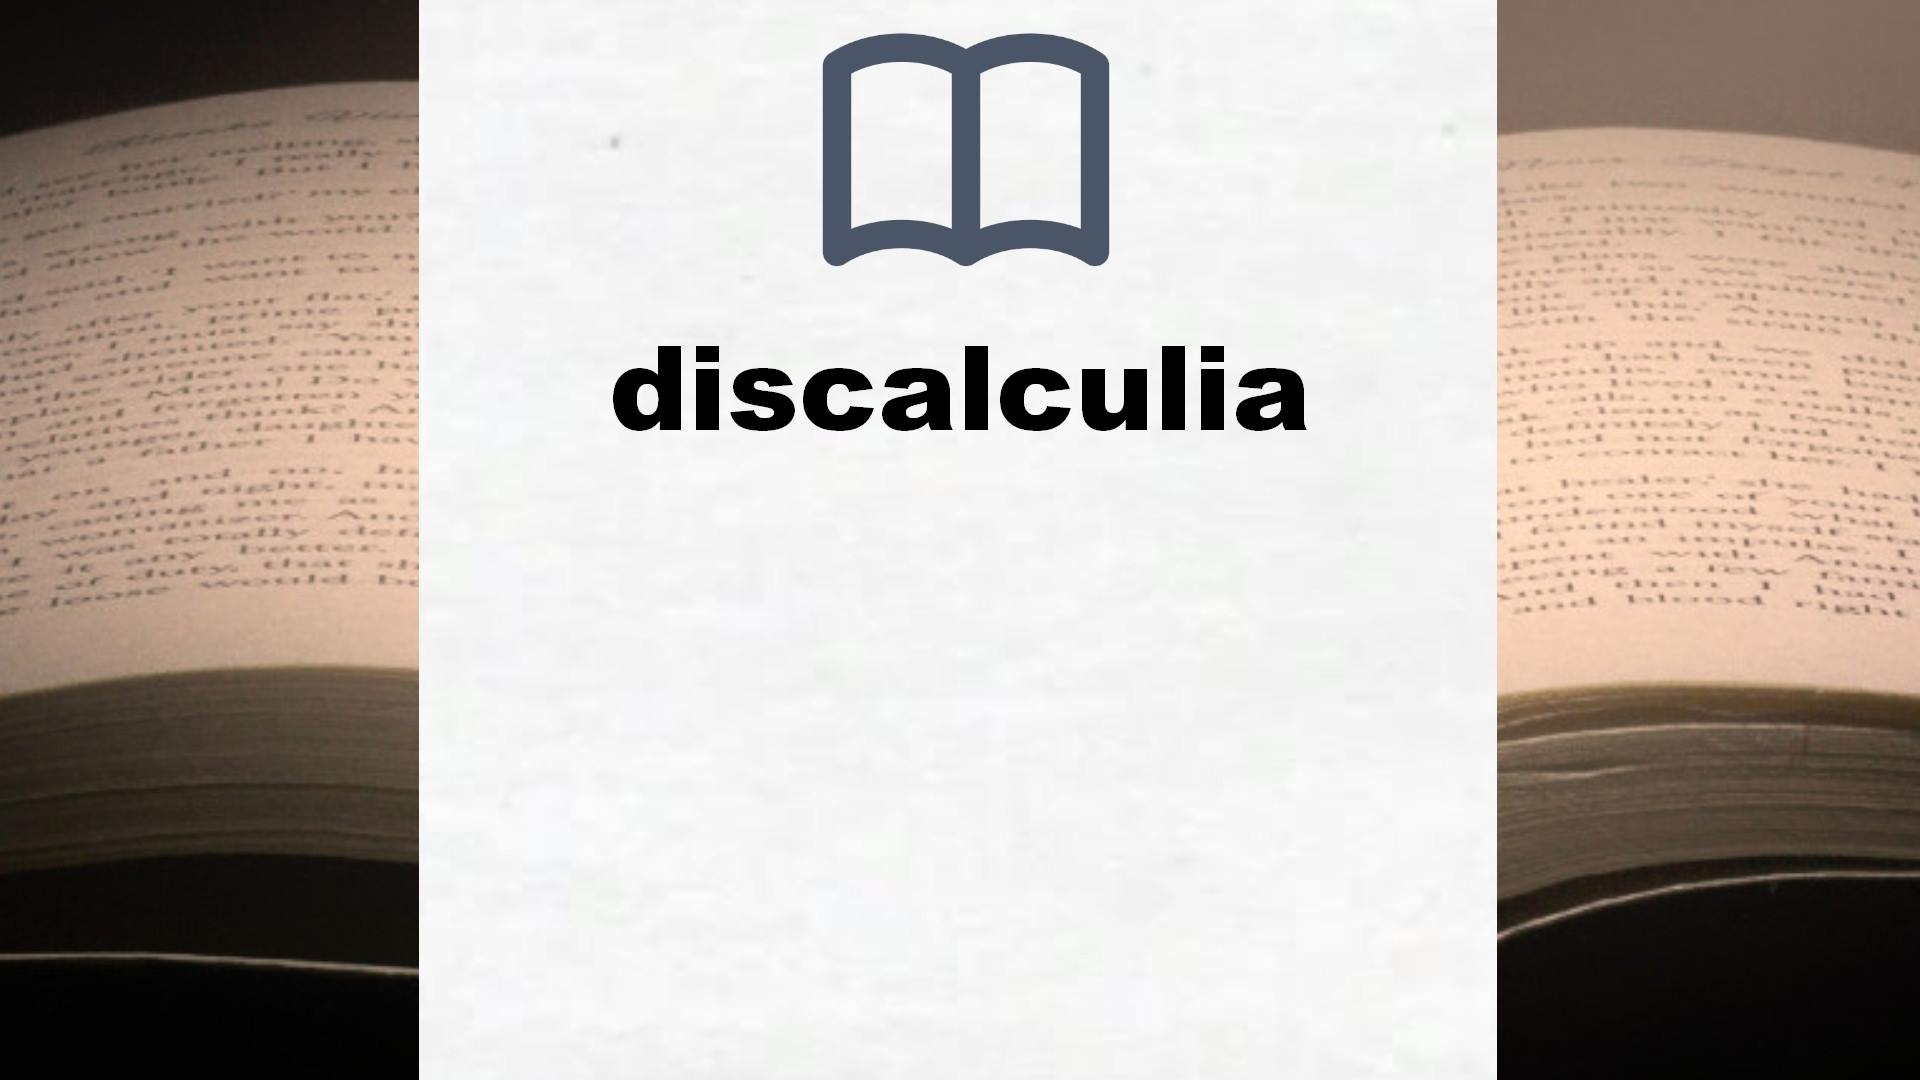 Libros sobre discalculia